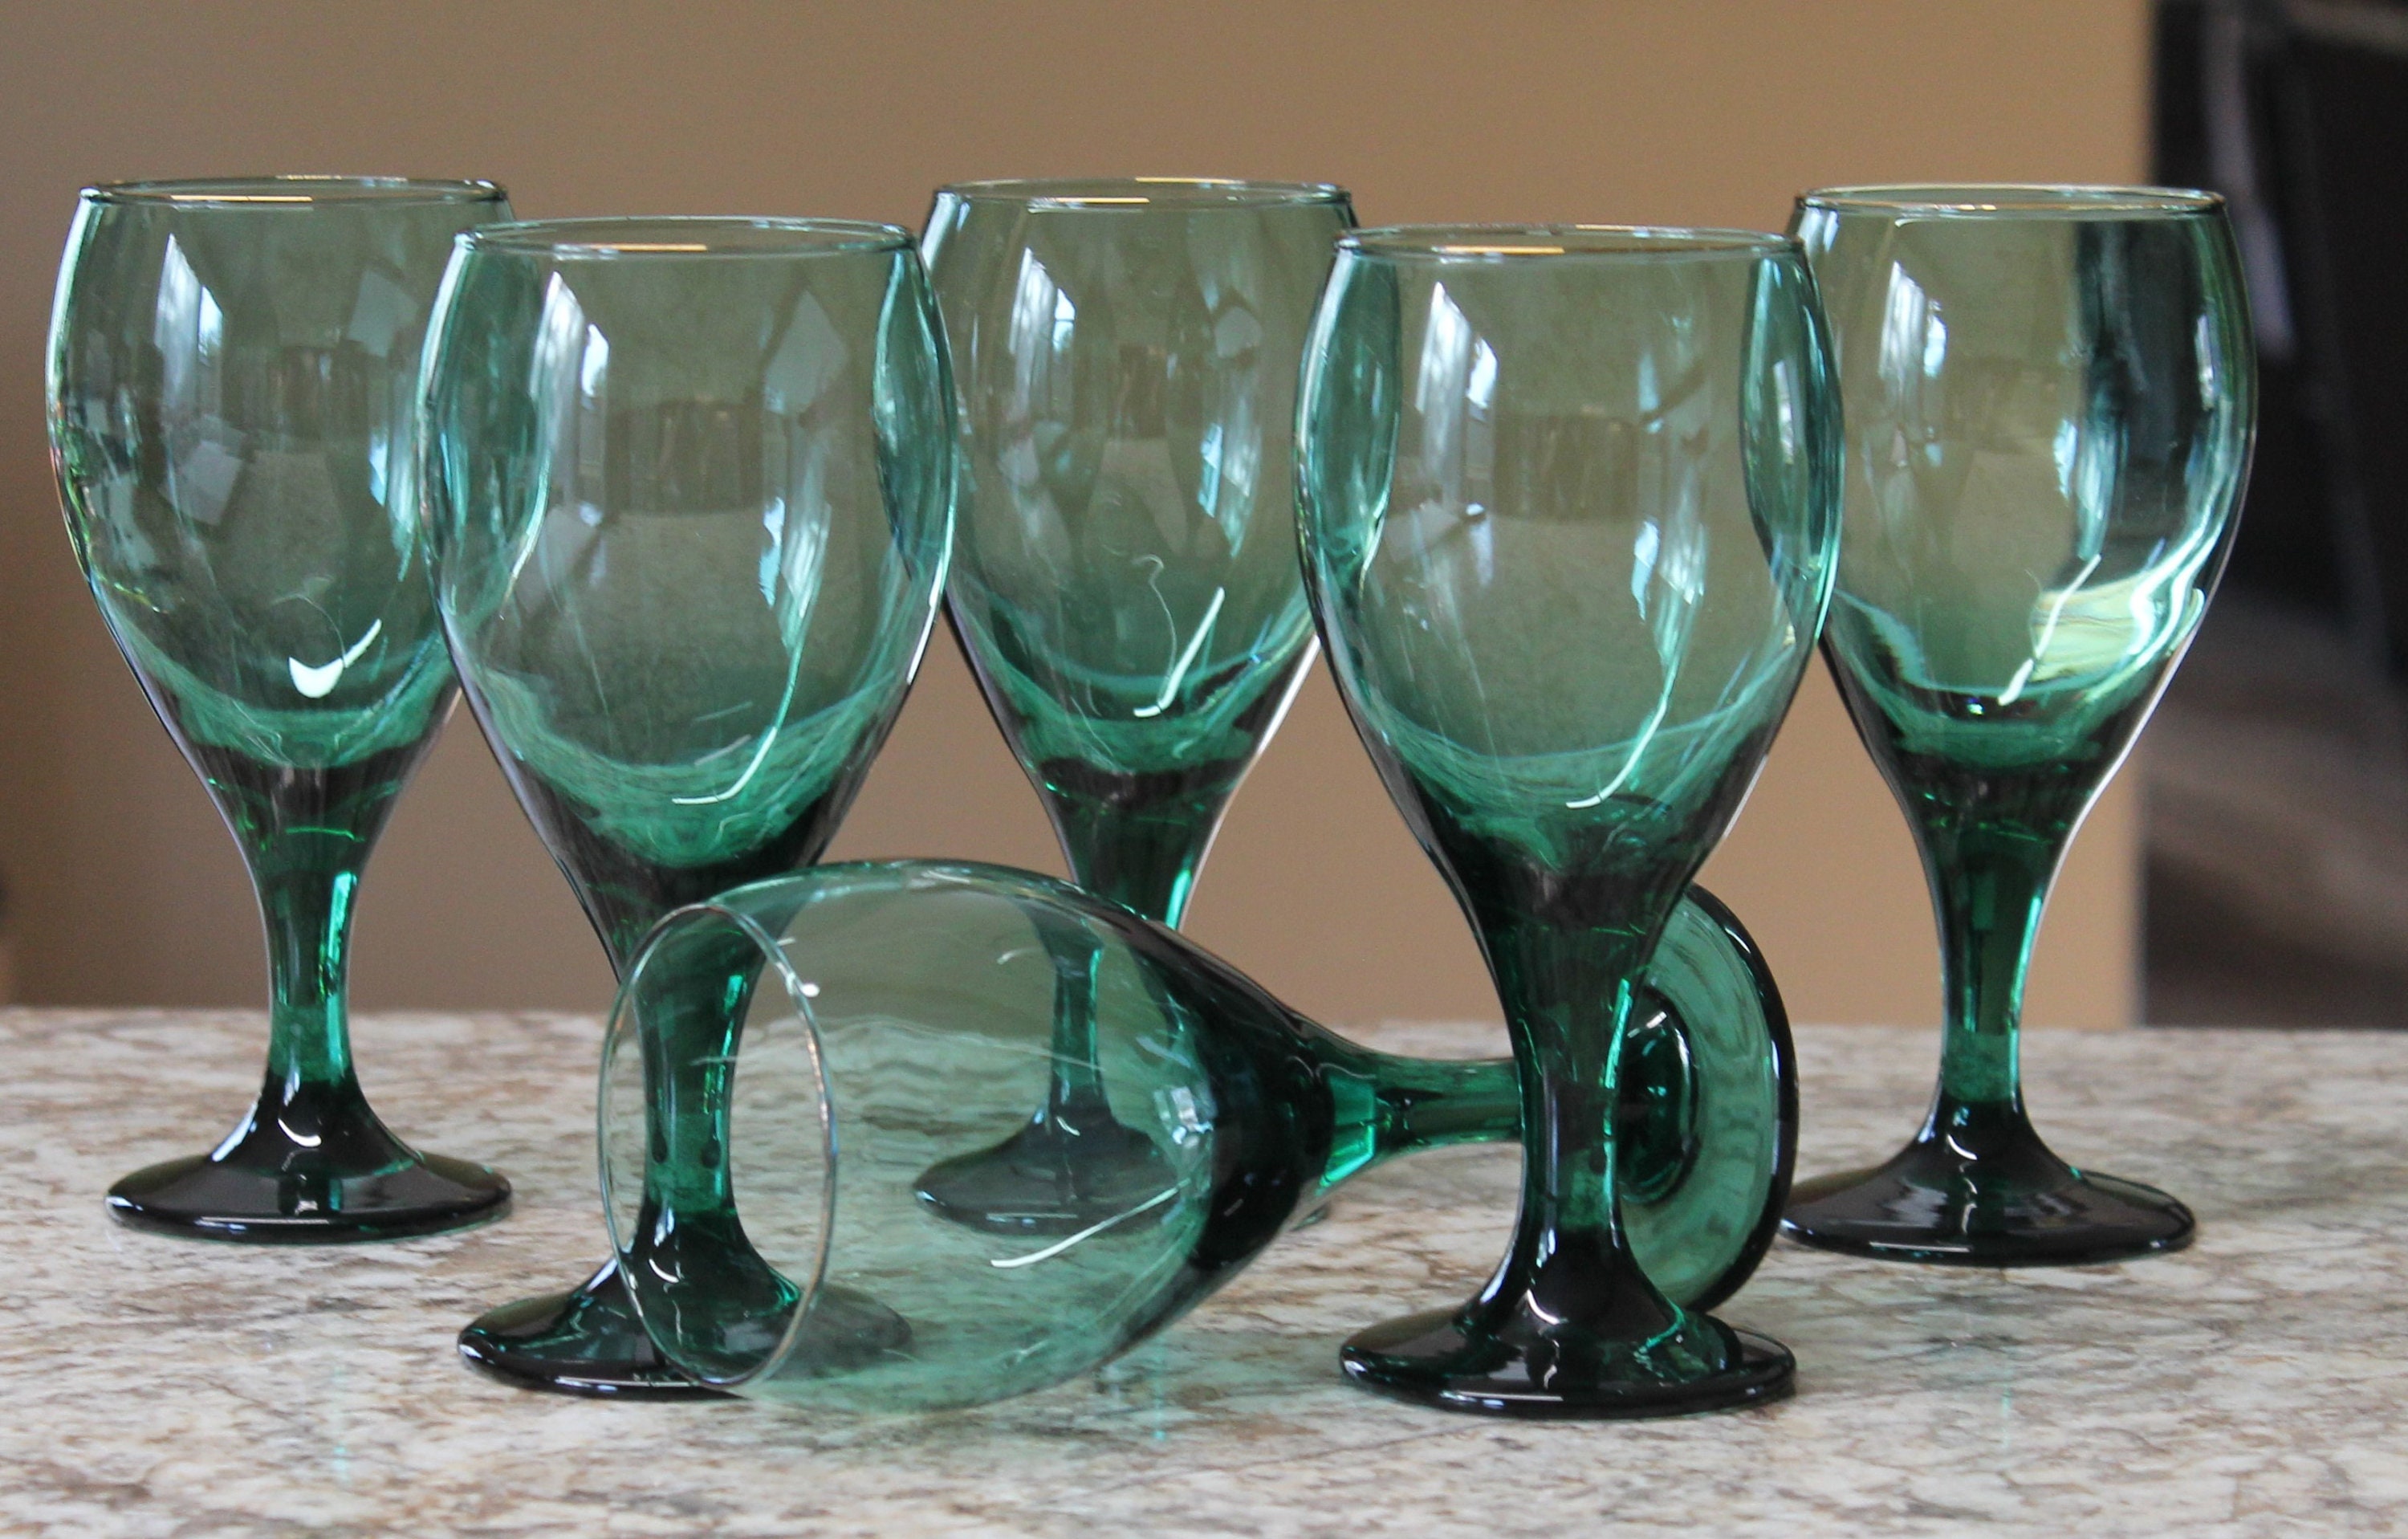 Vintage Wine Glass Set of 4 Goblet Old English Letter W Last Name